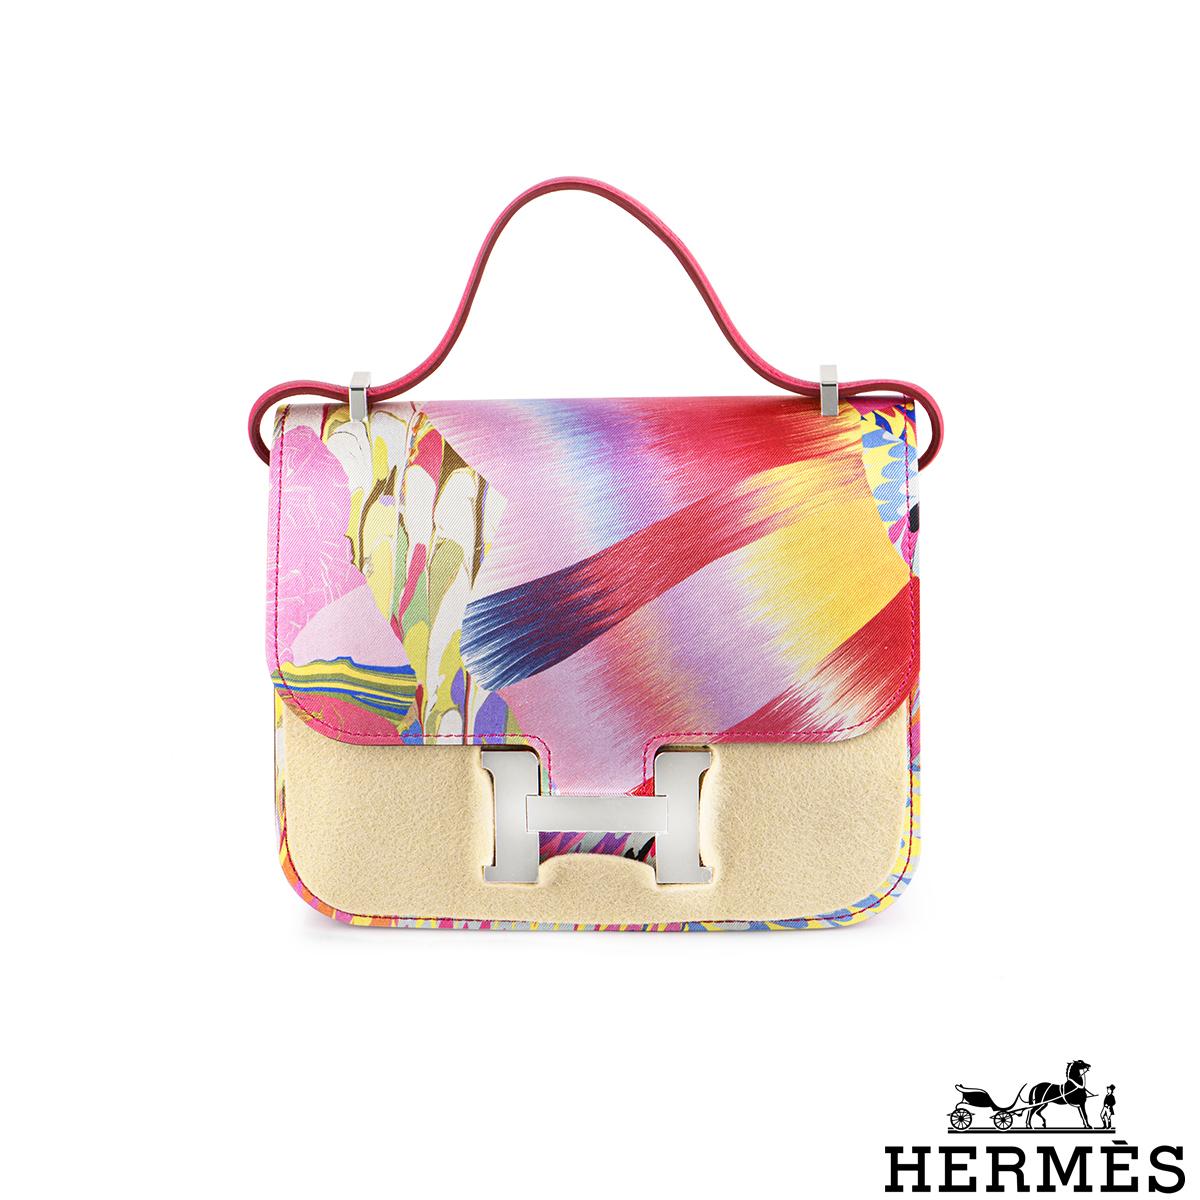 Un sac Hermès Constance 18cm en édition limitée. Le sac présente une technique rare qui permet de créer des couleurs exceptionnelles dans le motif Orbis en soie. L'extérieur de ce Constance présente des surpiqûres ton sur ton, une fermeture à